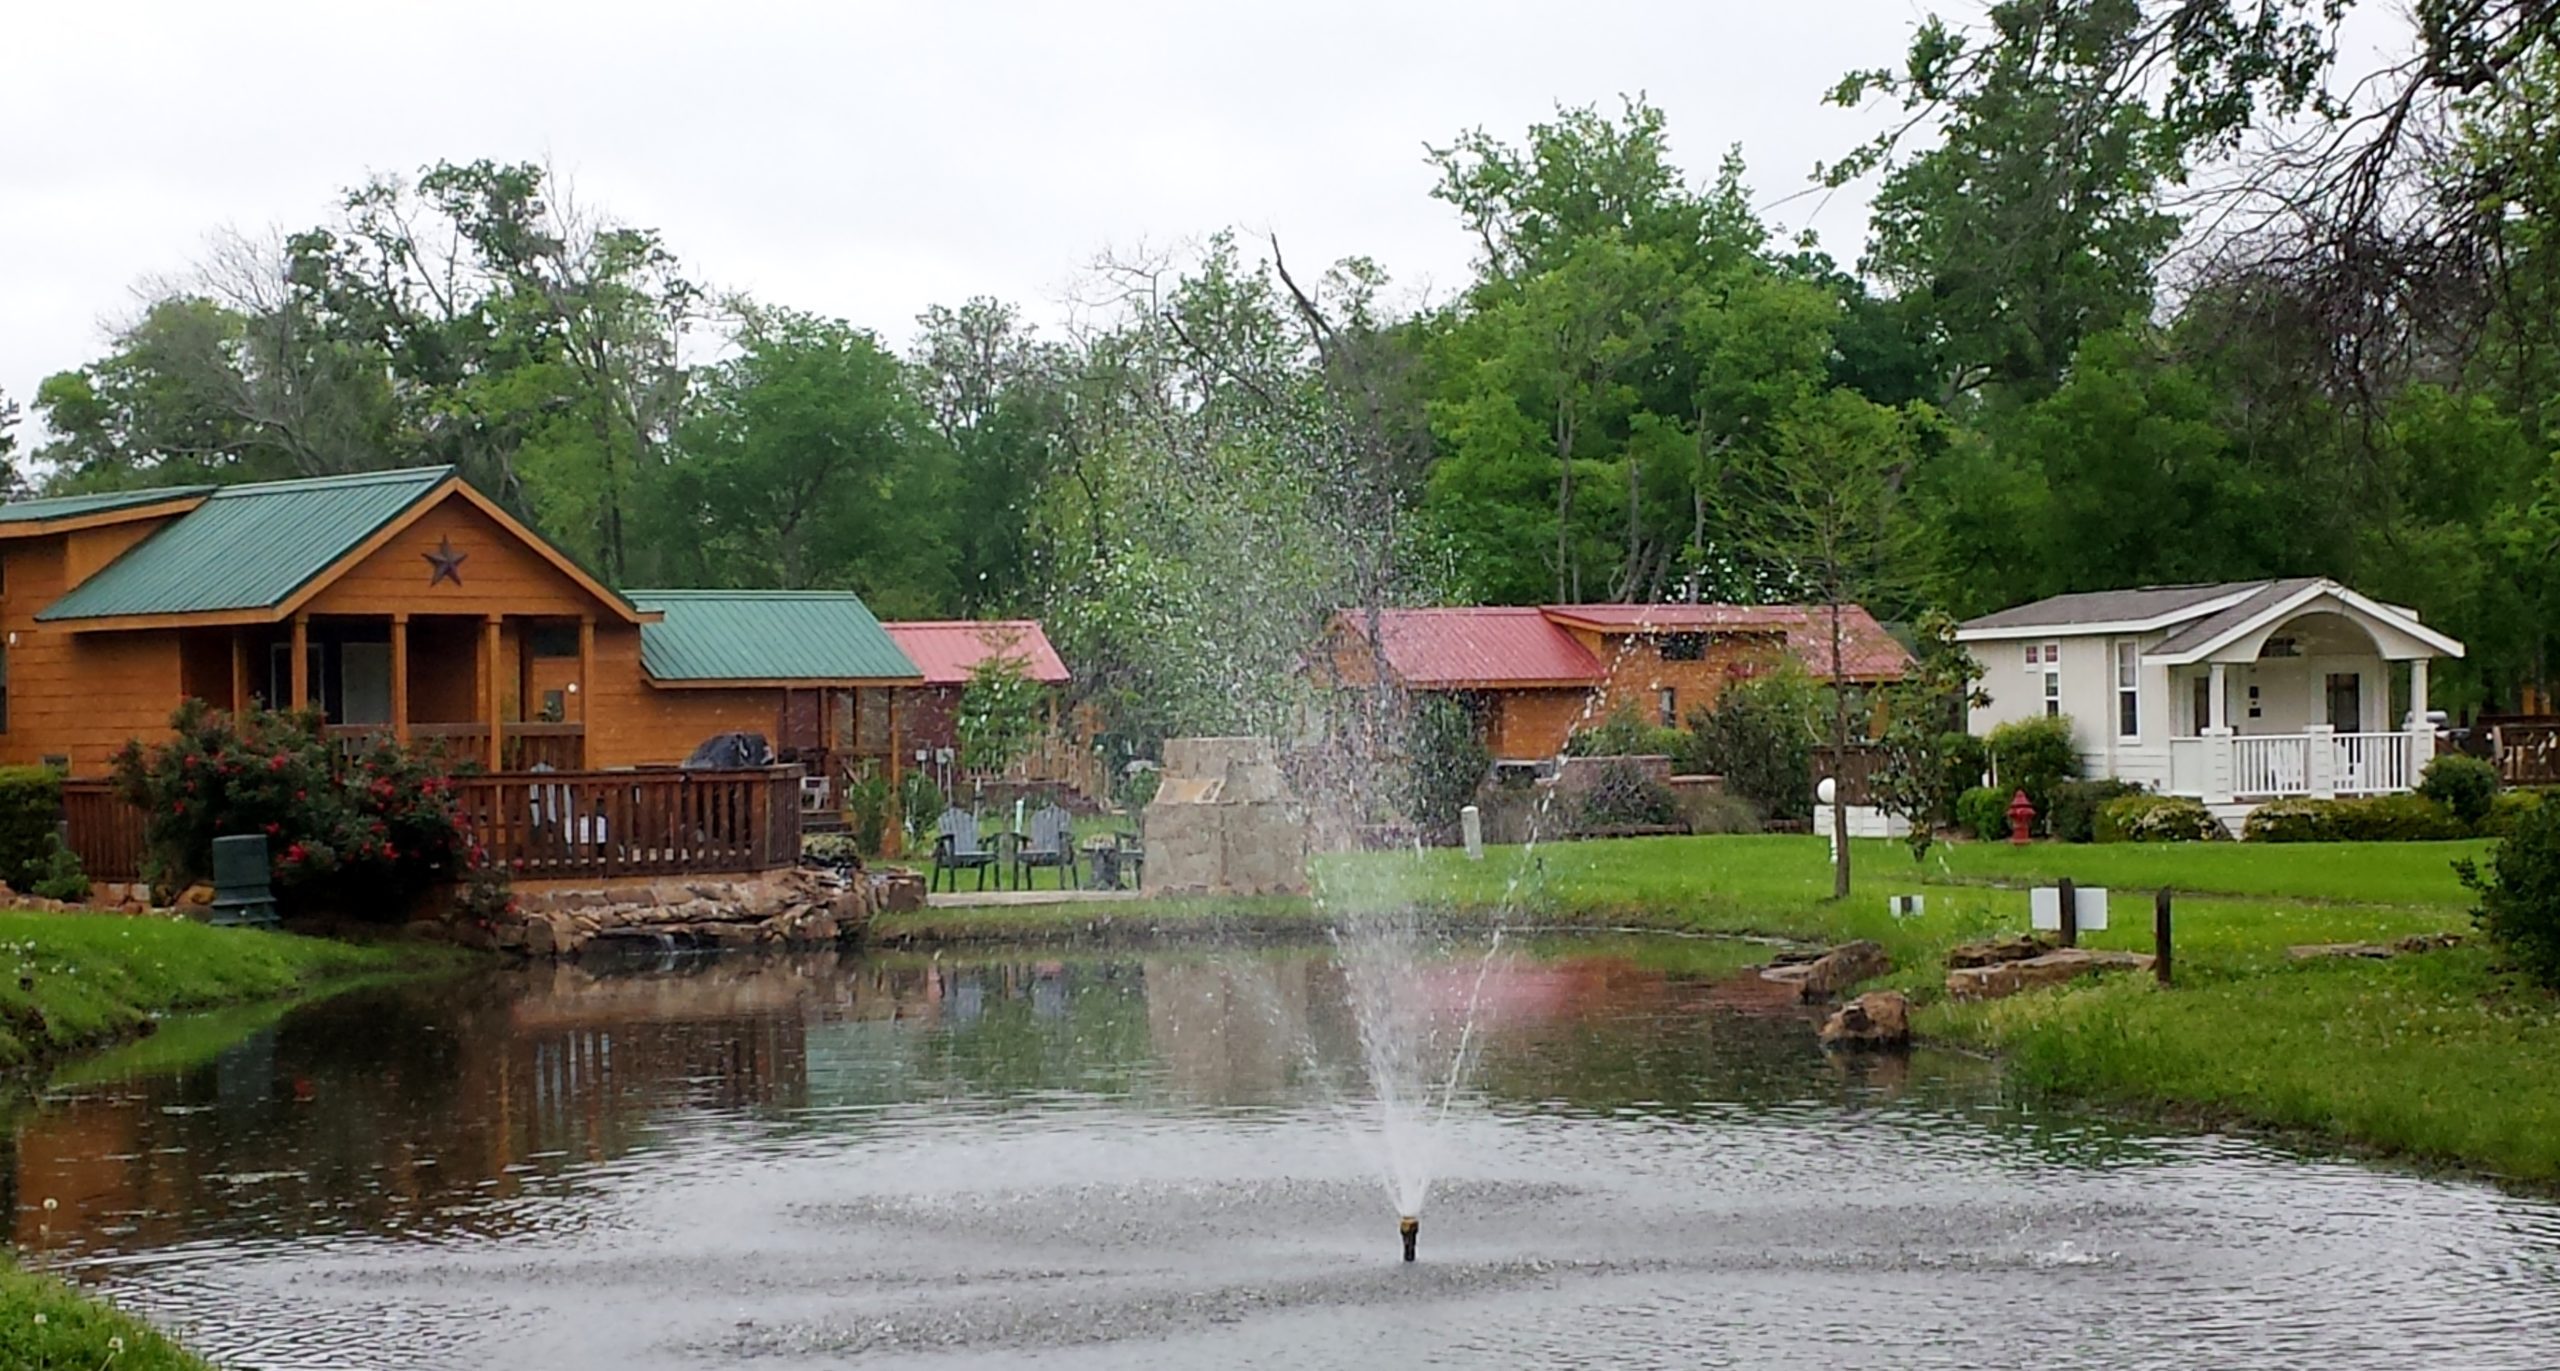 pond, multiple cottages